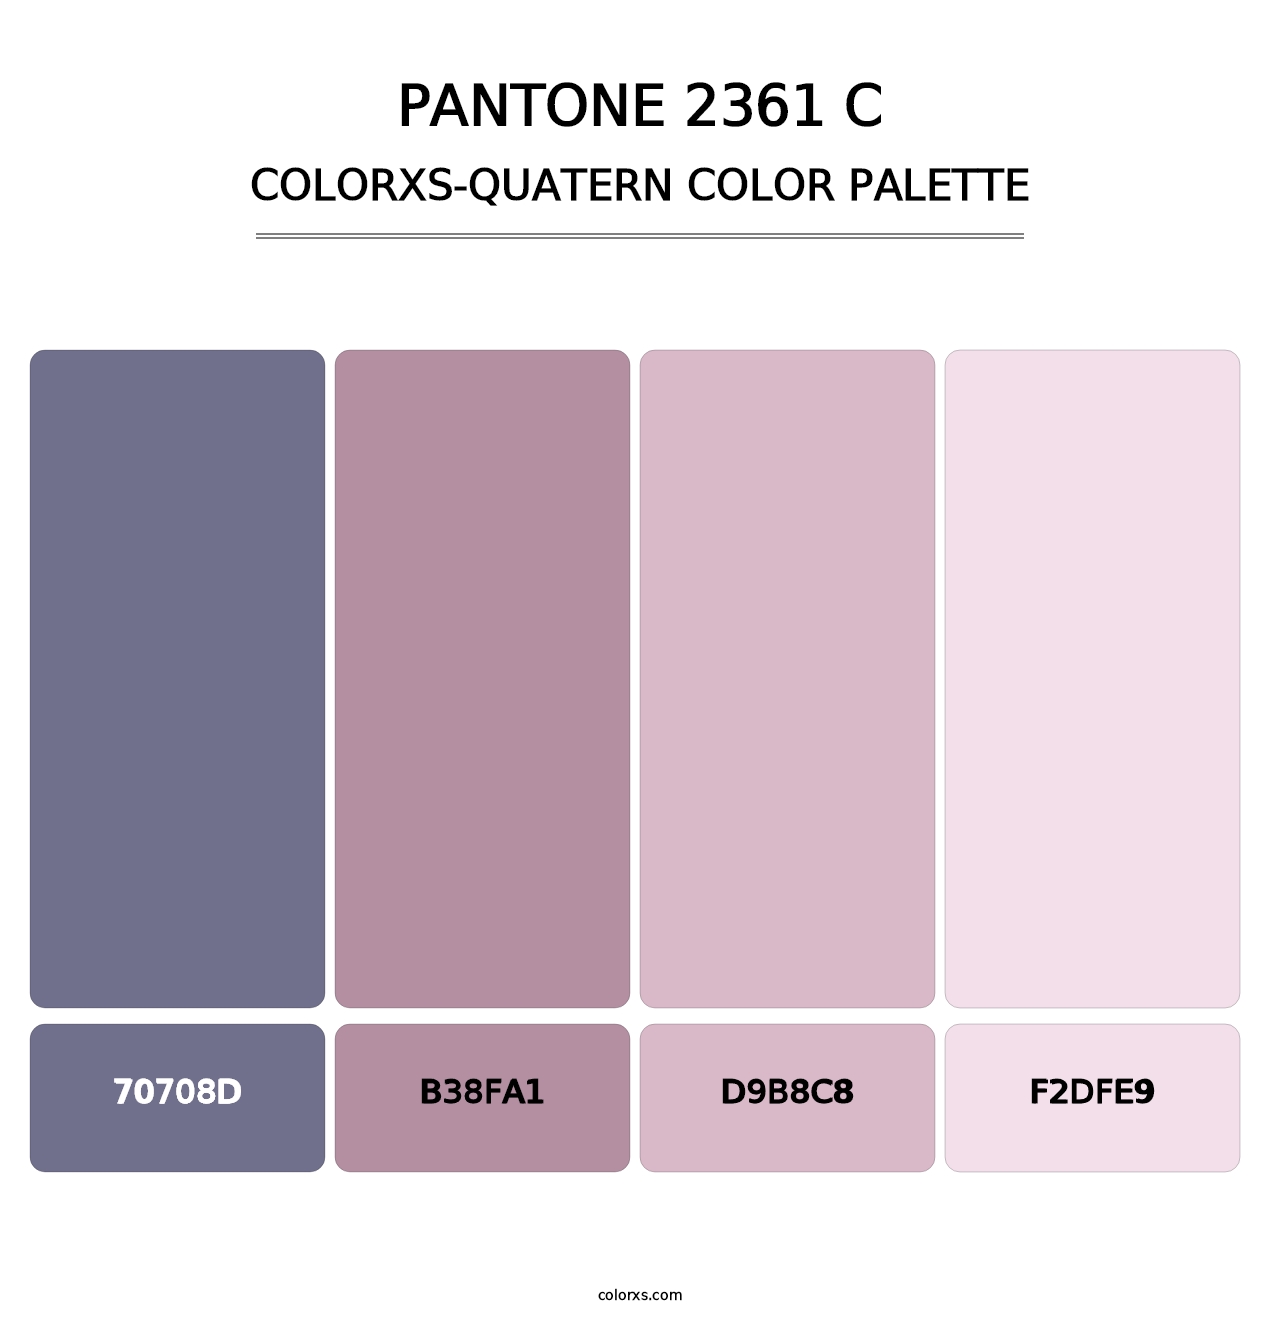 PANTONE 2361 C - Colorxs Quatern Palette